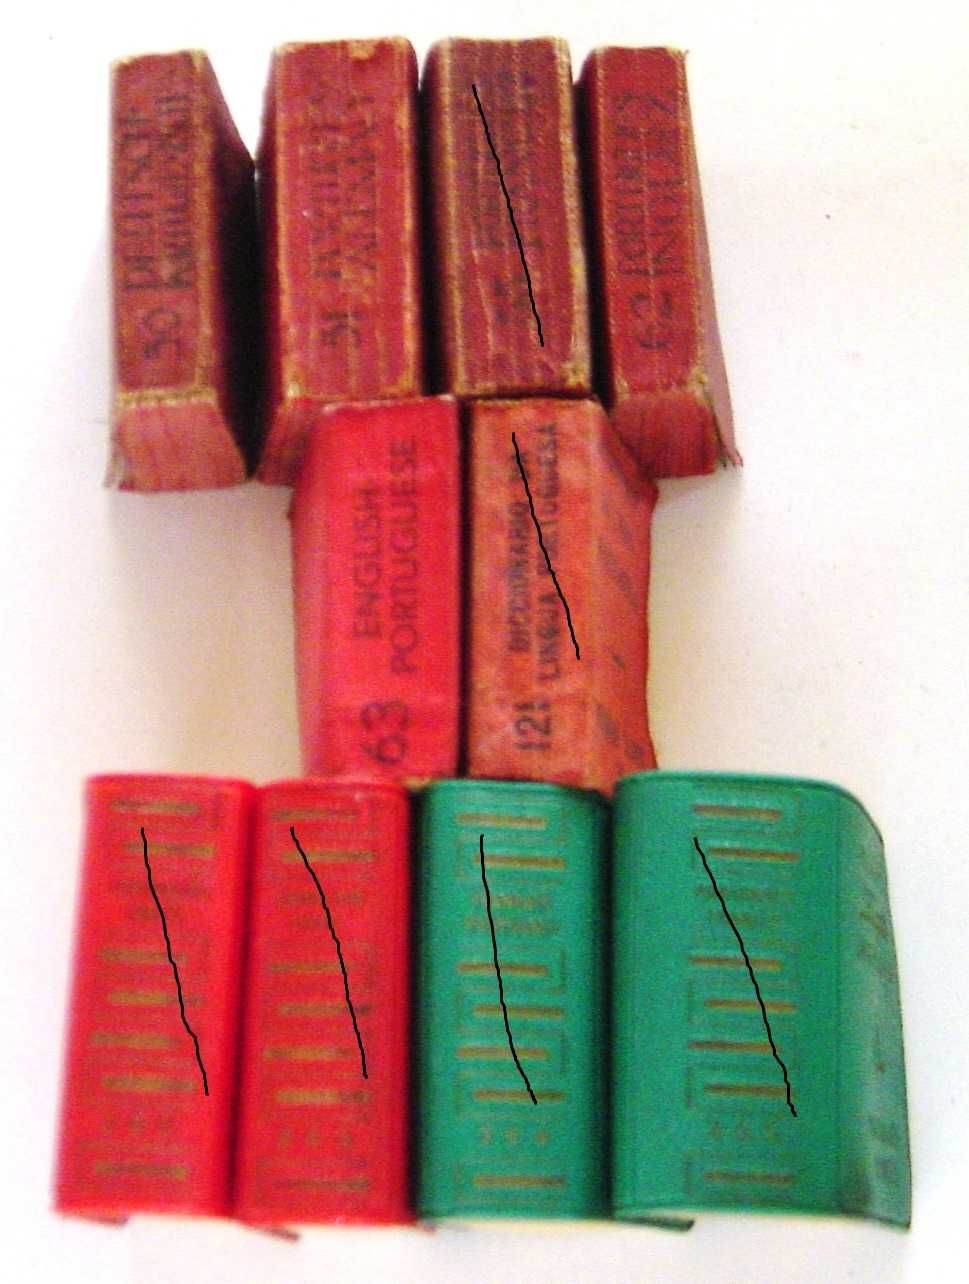 Raro conjunto de quatro Dicionários Lilliput Anos 1920/1930